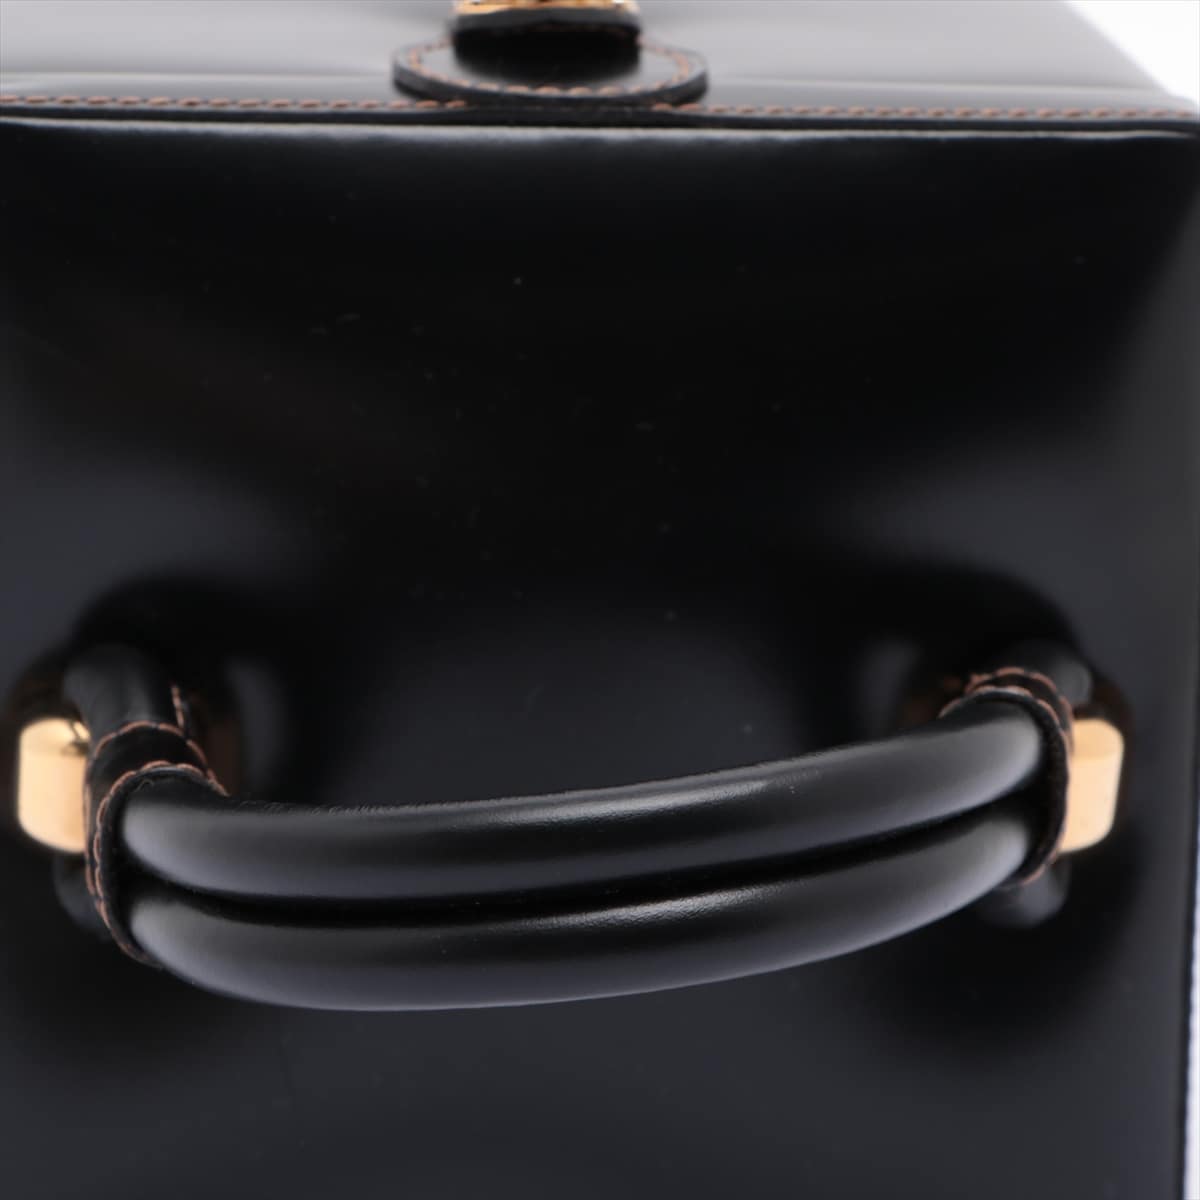 Loewe Leather Vanity bag Black